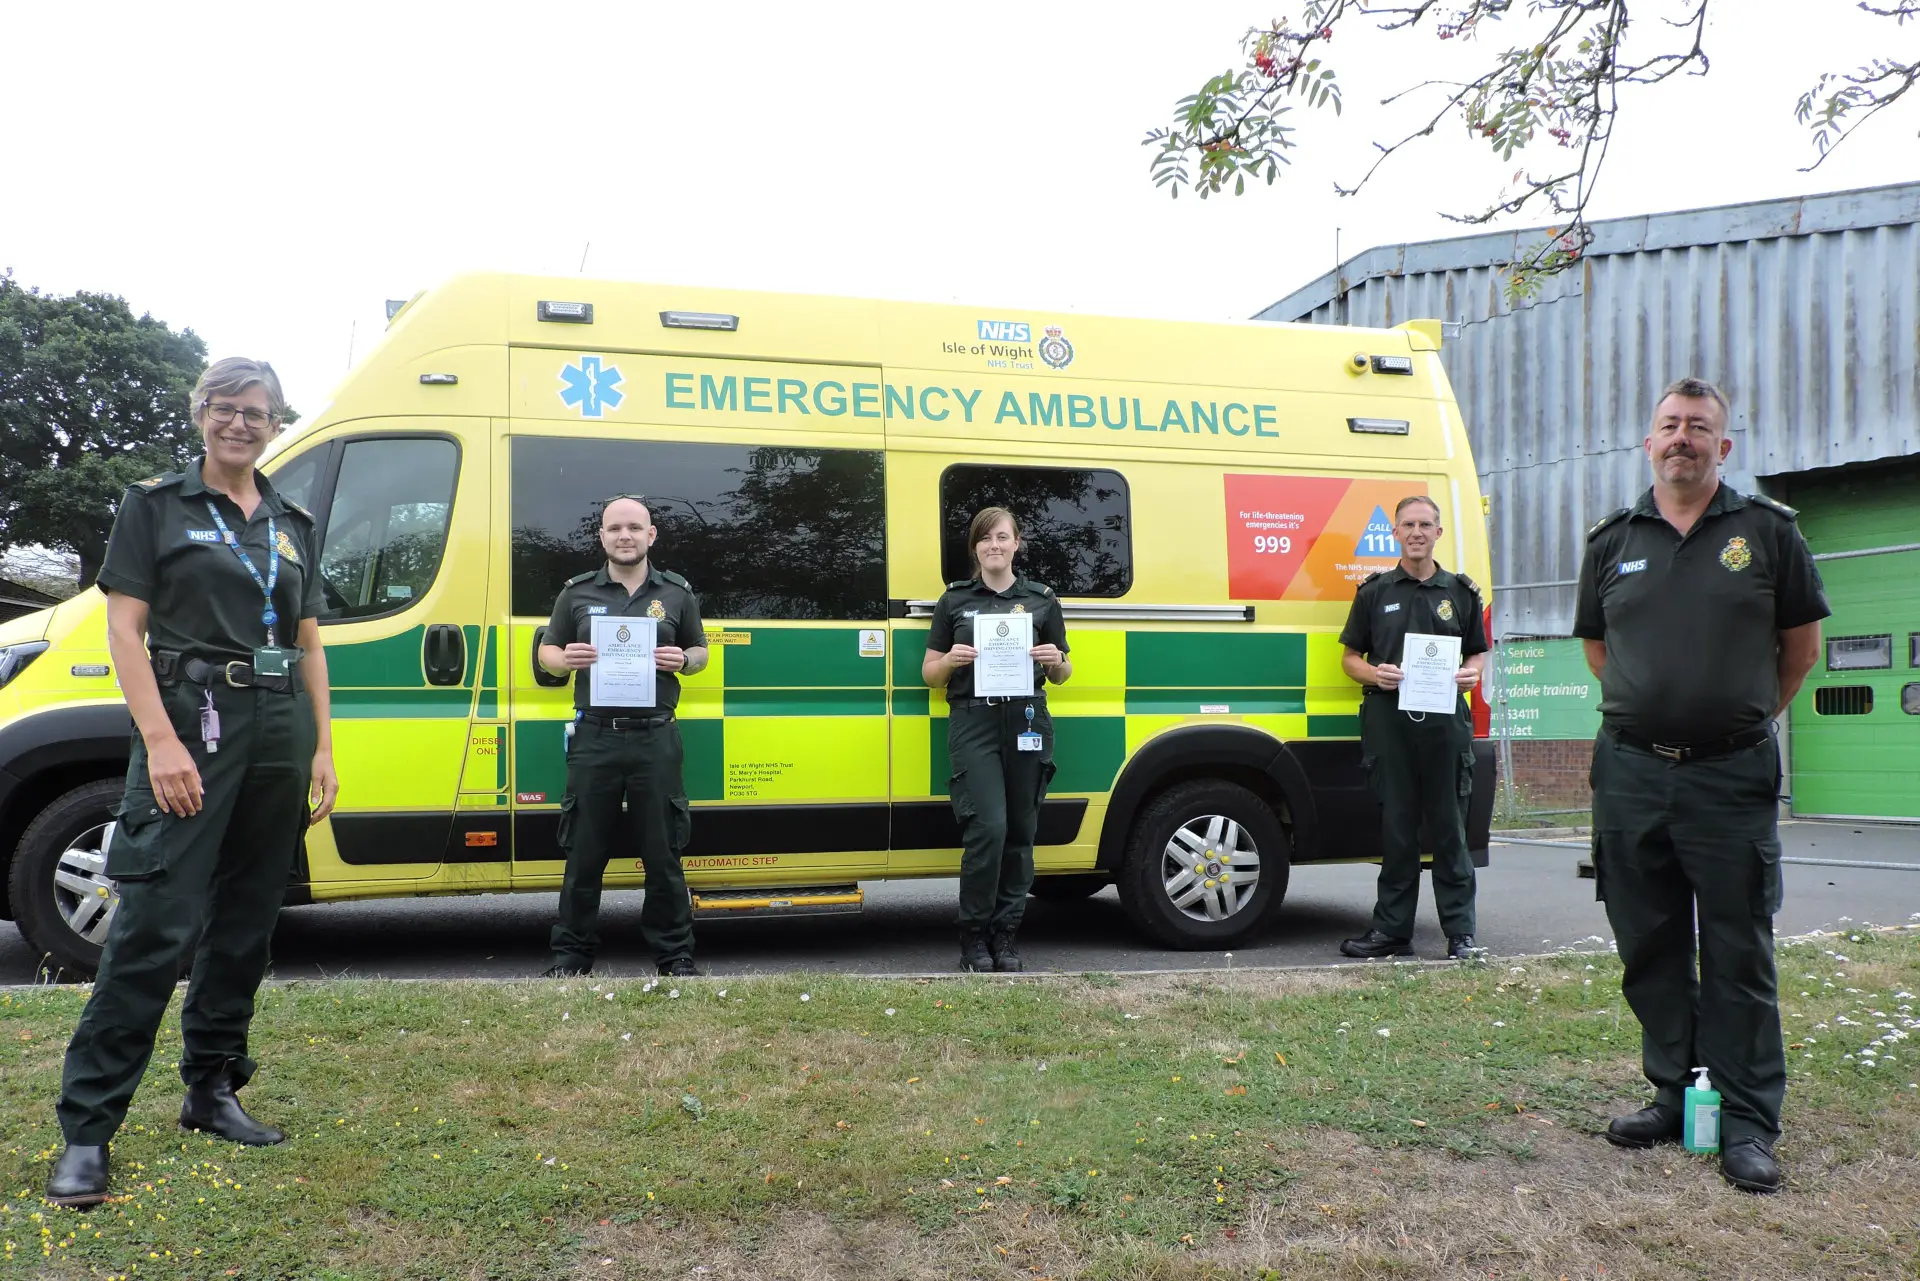 Newly qualified ambulance drivers standing by an ambulance